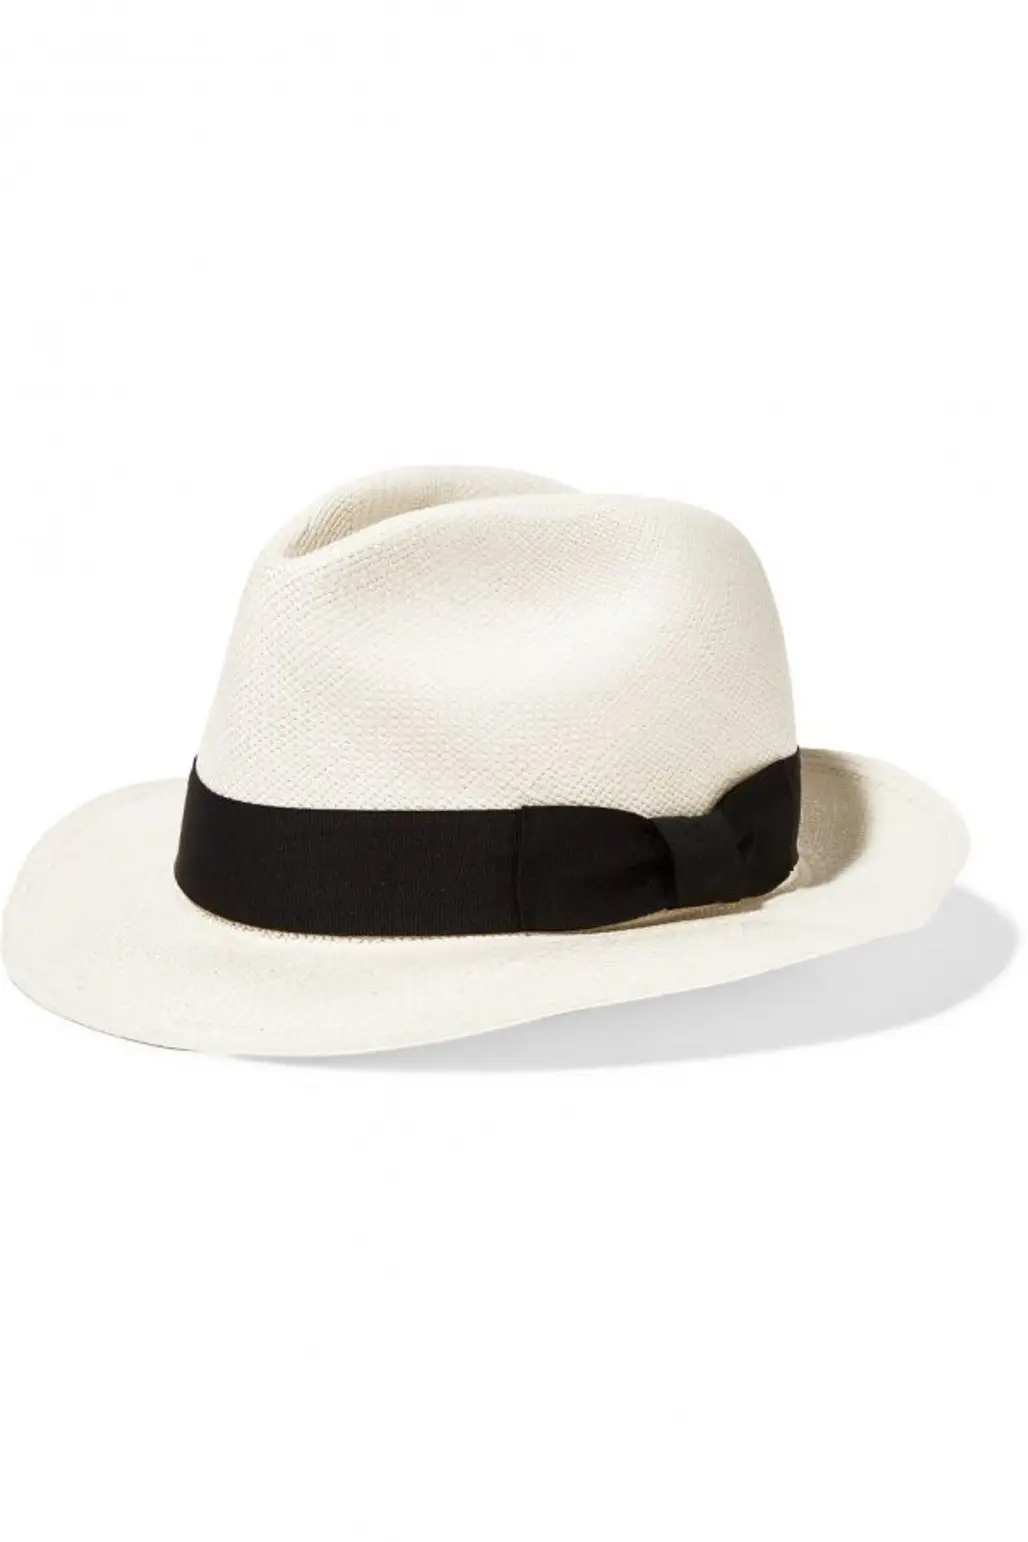 clothing, hat, fedora, baseball cap, fashion accessory,